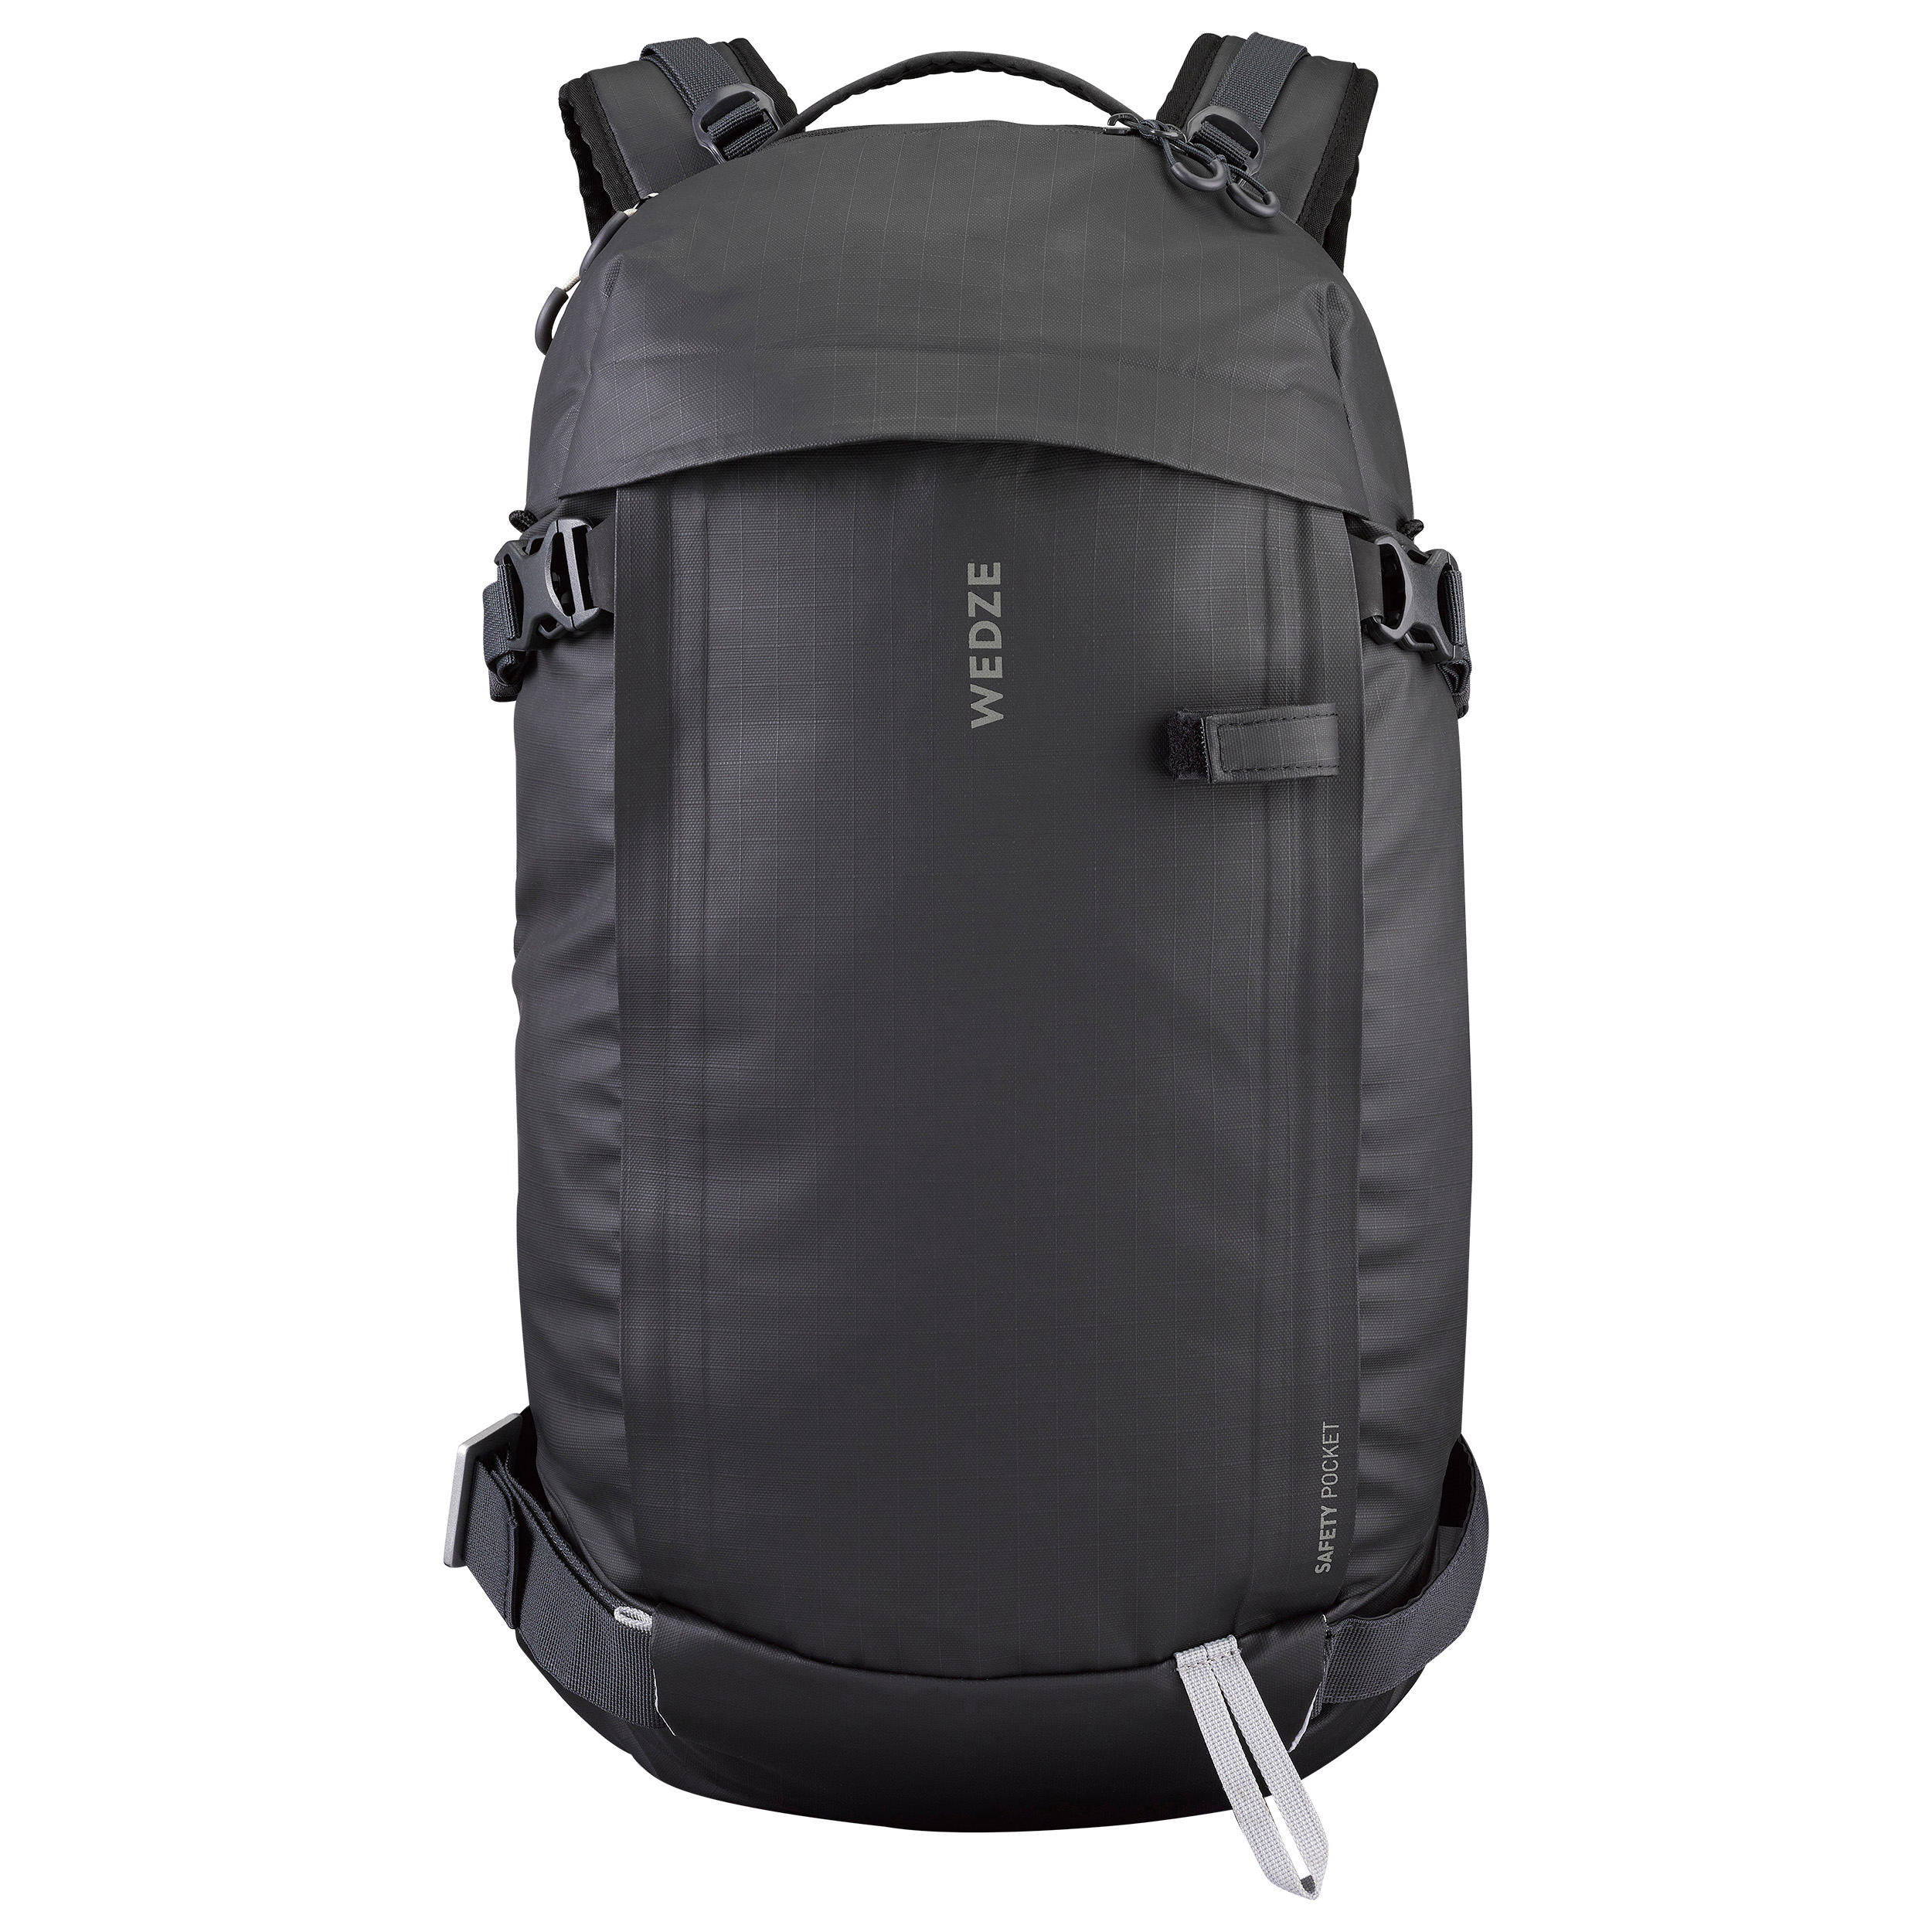 Freeride Ski Back Protector Backpack - FR 500 - WEDZE